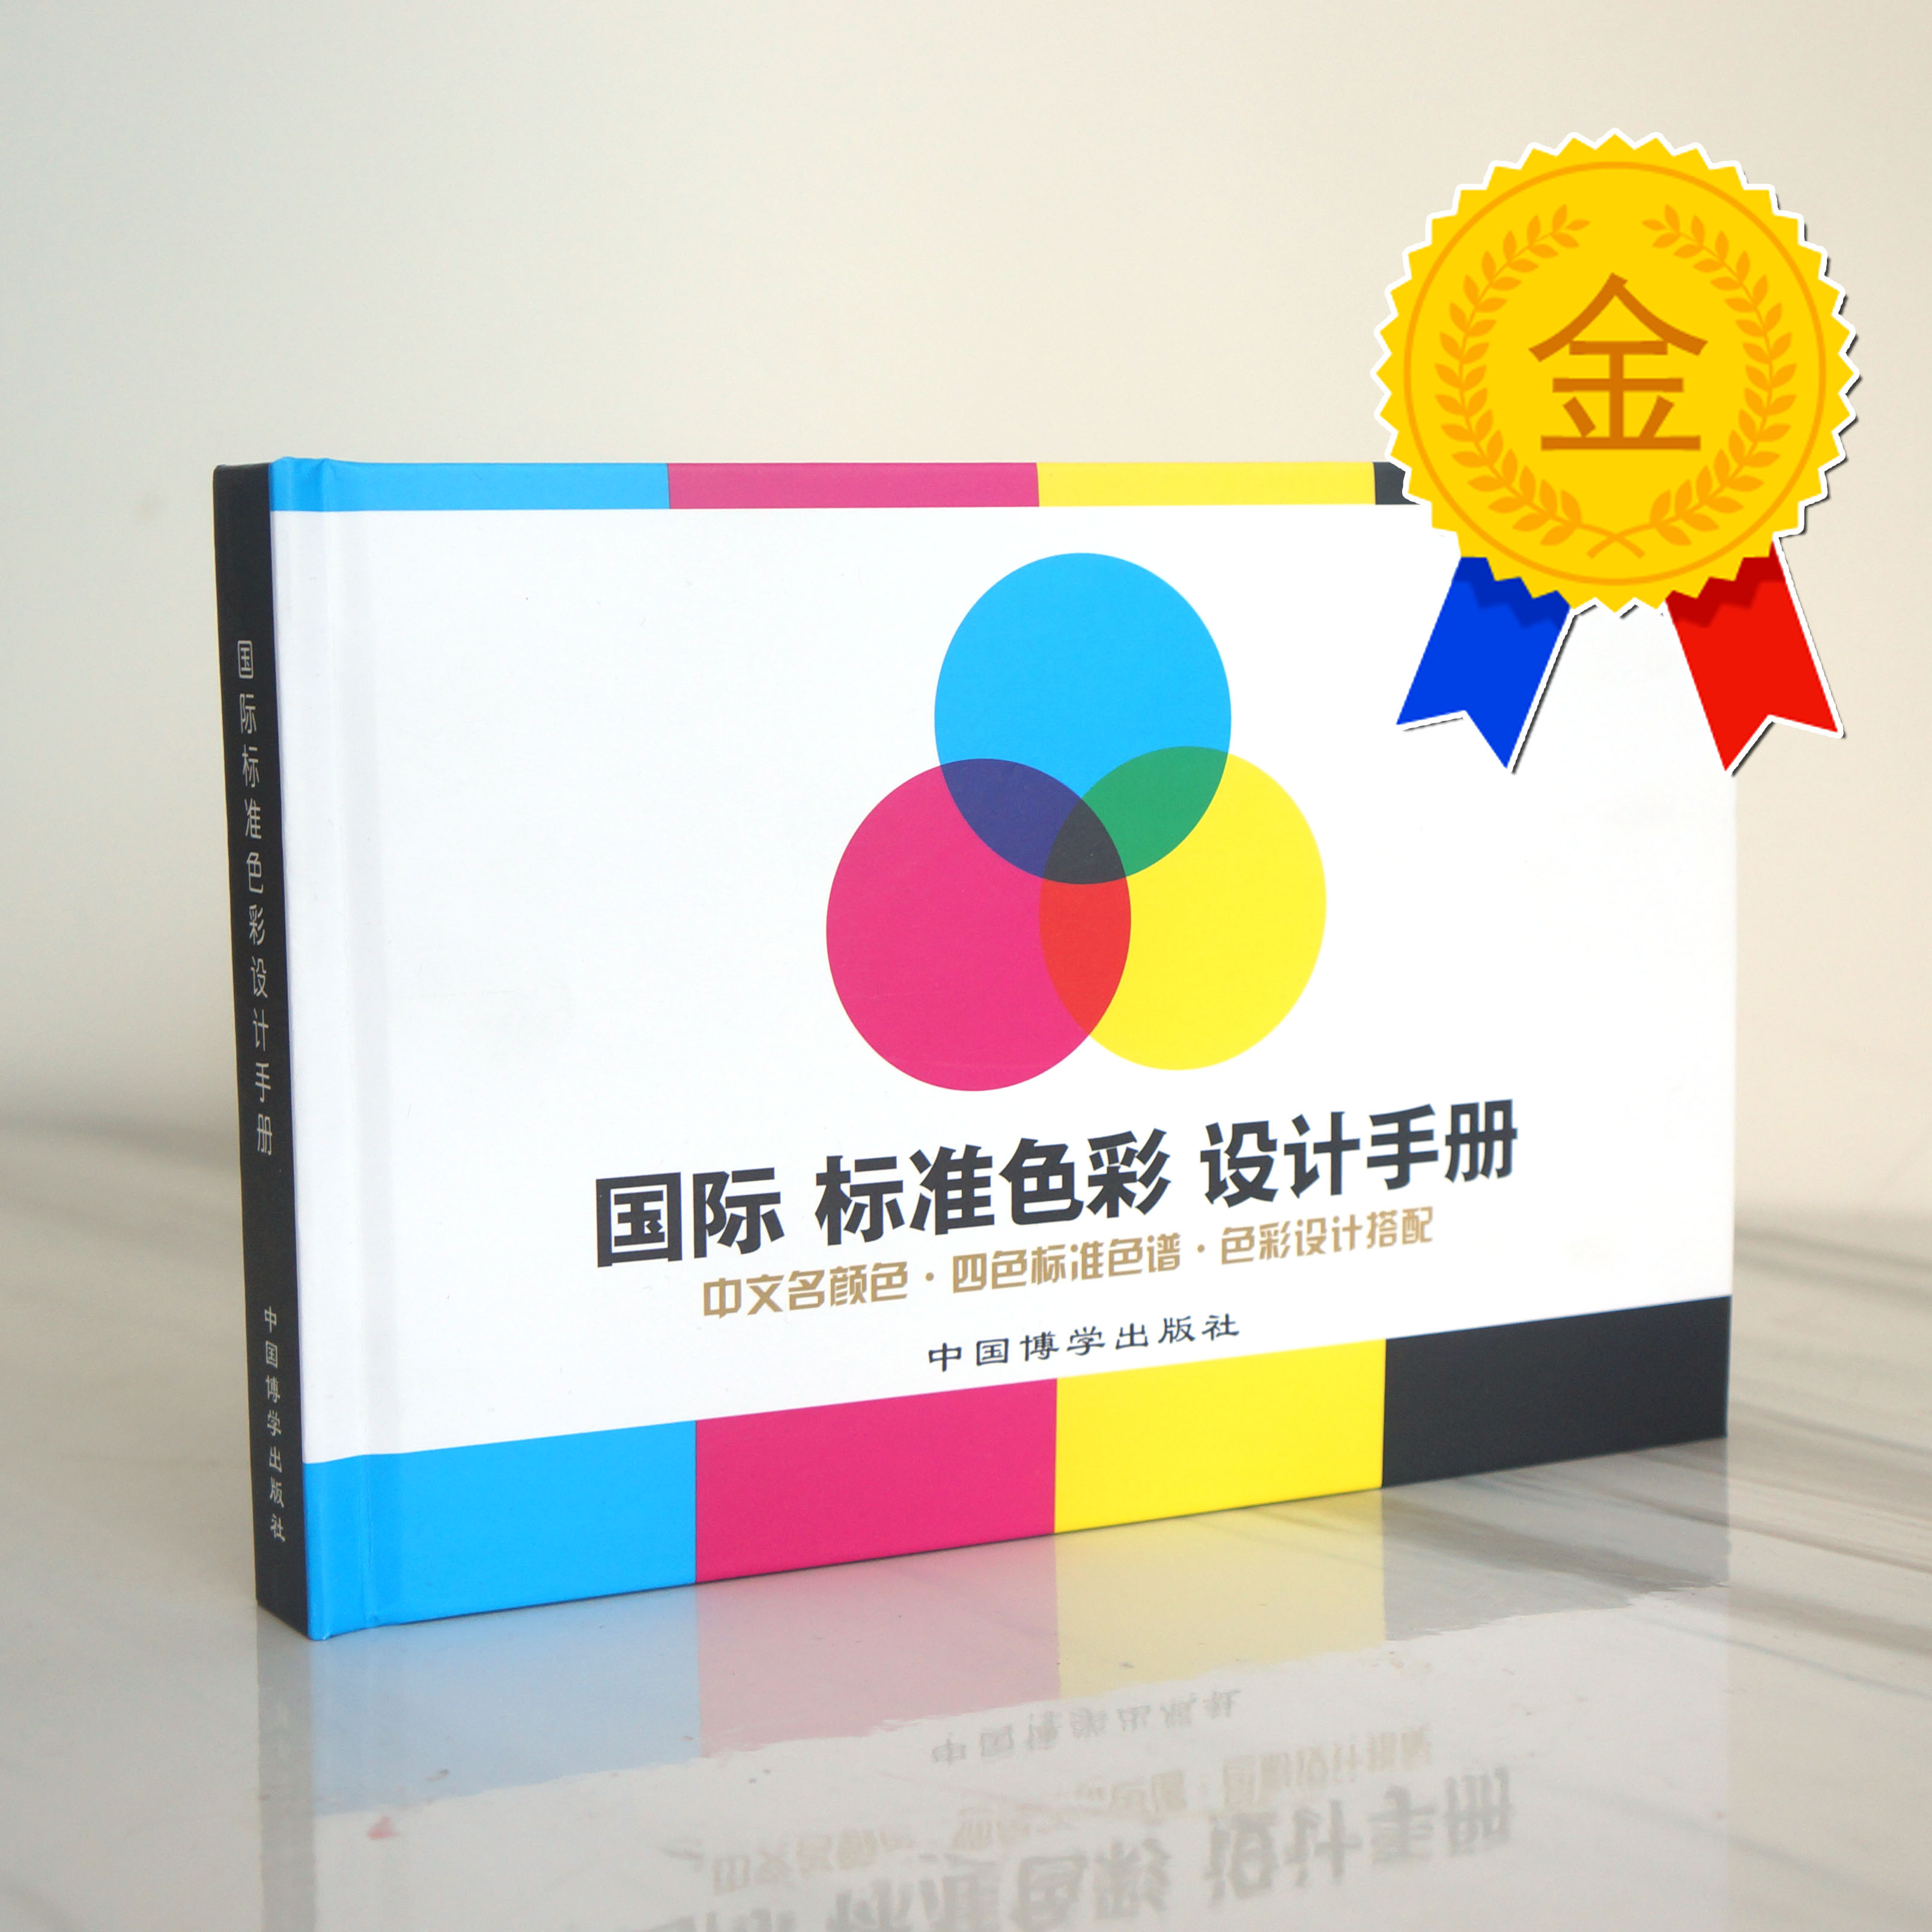 国际通用四色色卡 印刷标准色谱与配色方案 cmyk色卡 四色色谱书